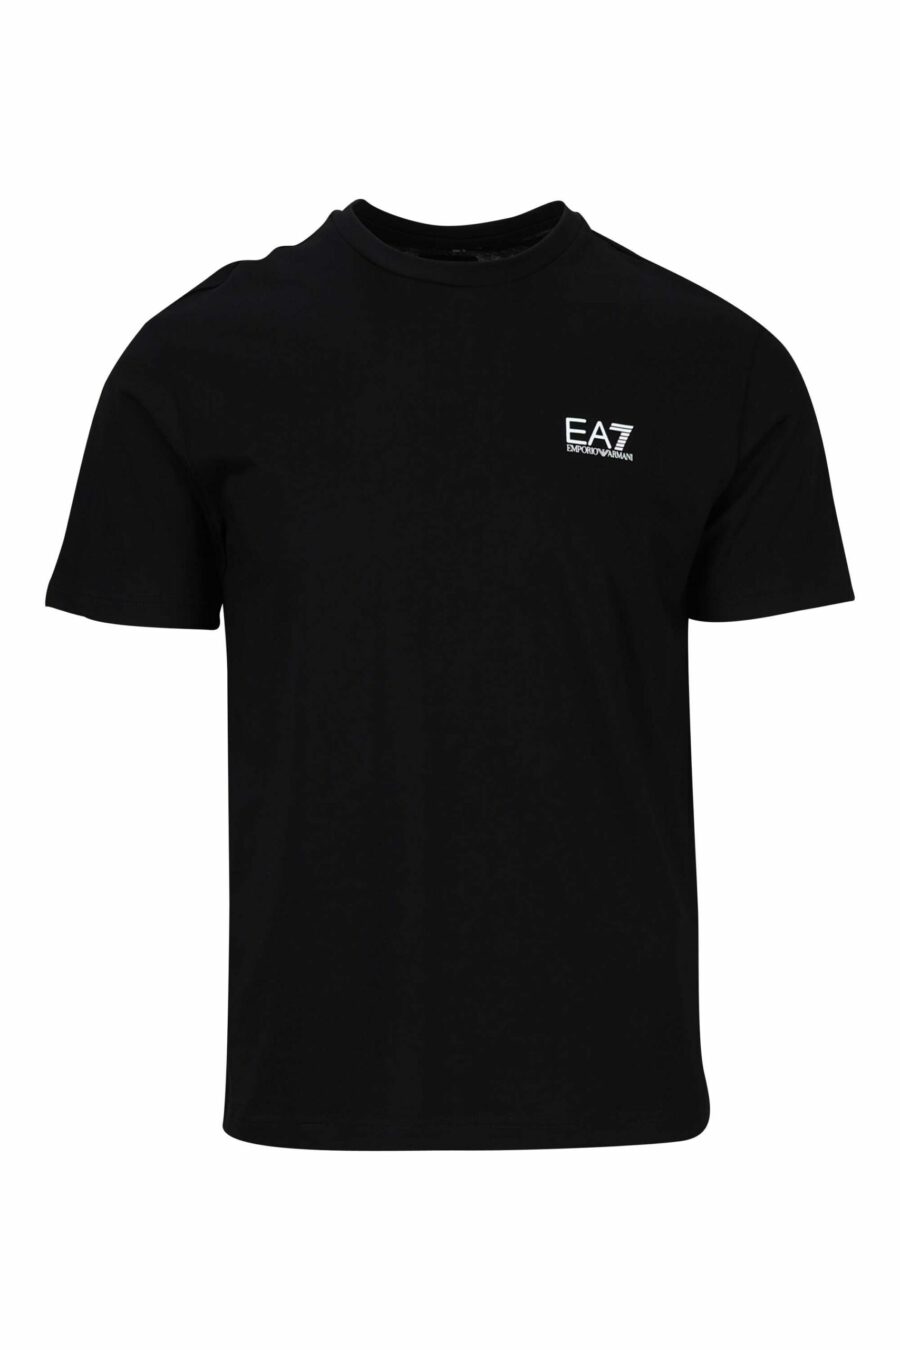 T-shirt preta com o maxilogo vertical "lux identity" nas costas - 8058947452668 scaled